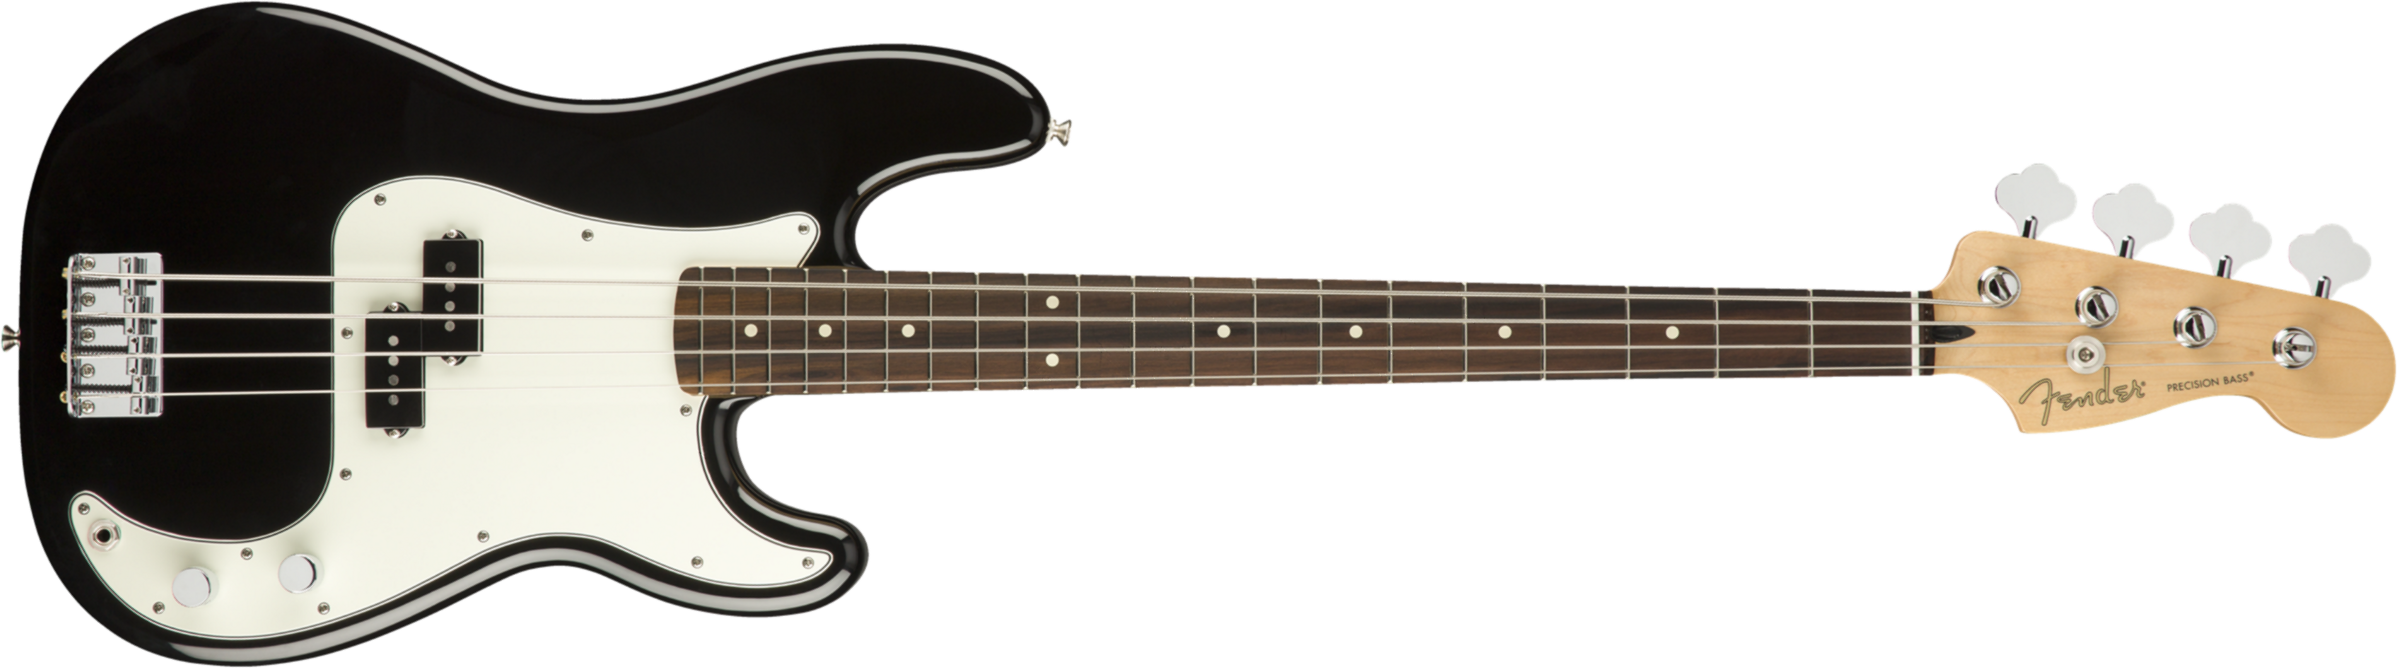 Fender Precision Bass Player Mex Pf - Black - Bajo eléctrico de cuerpo sólido - Main picture